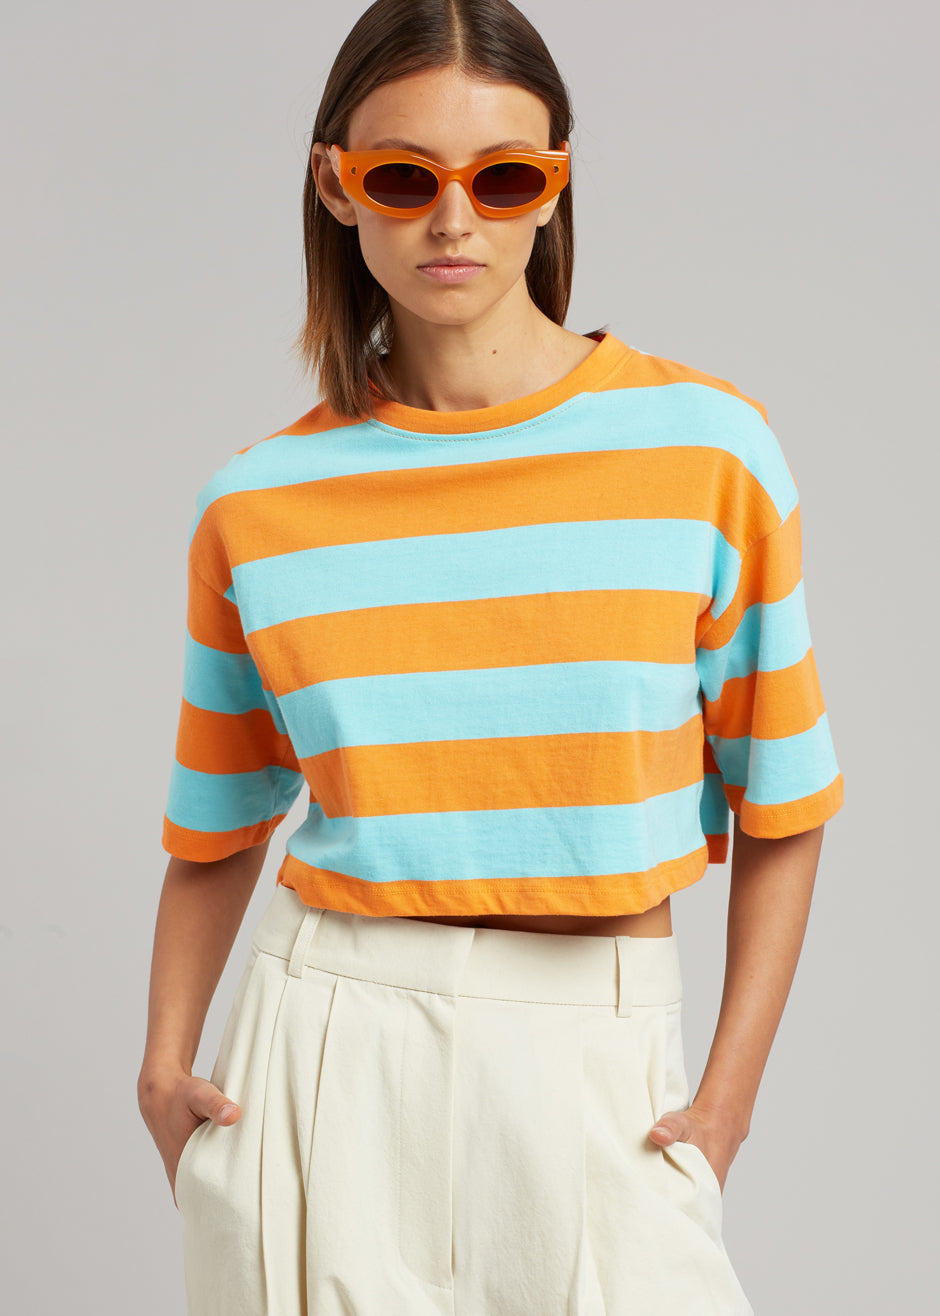 Karina Cropped T-Shirt - Turquoise/Bright Orange